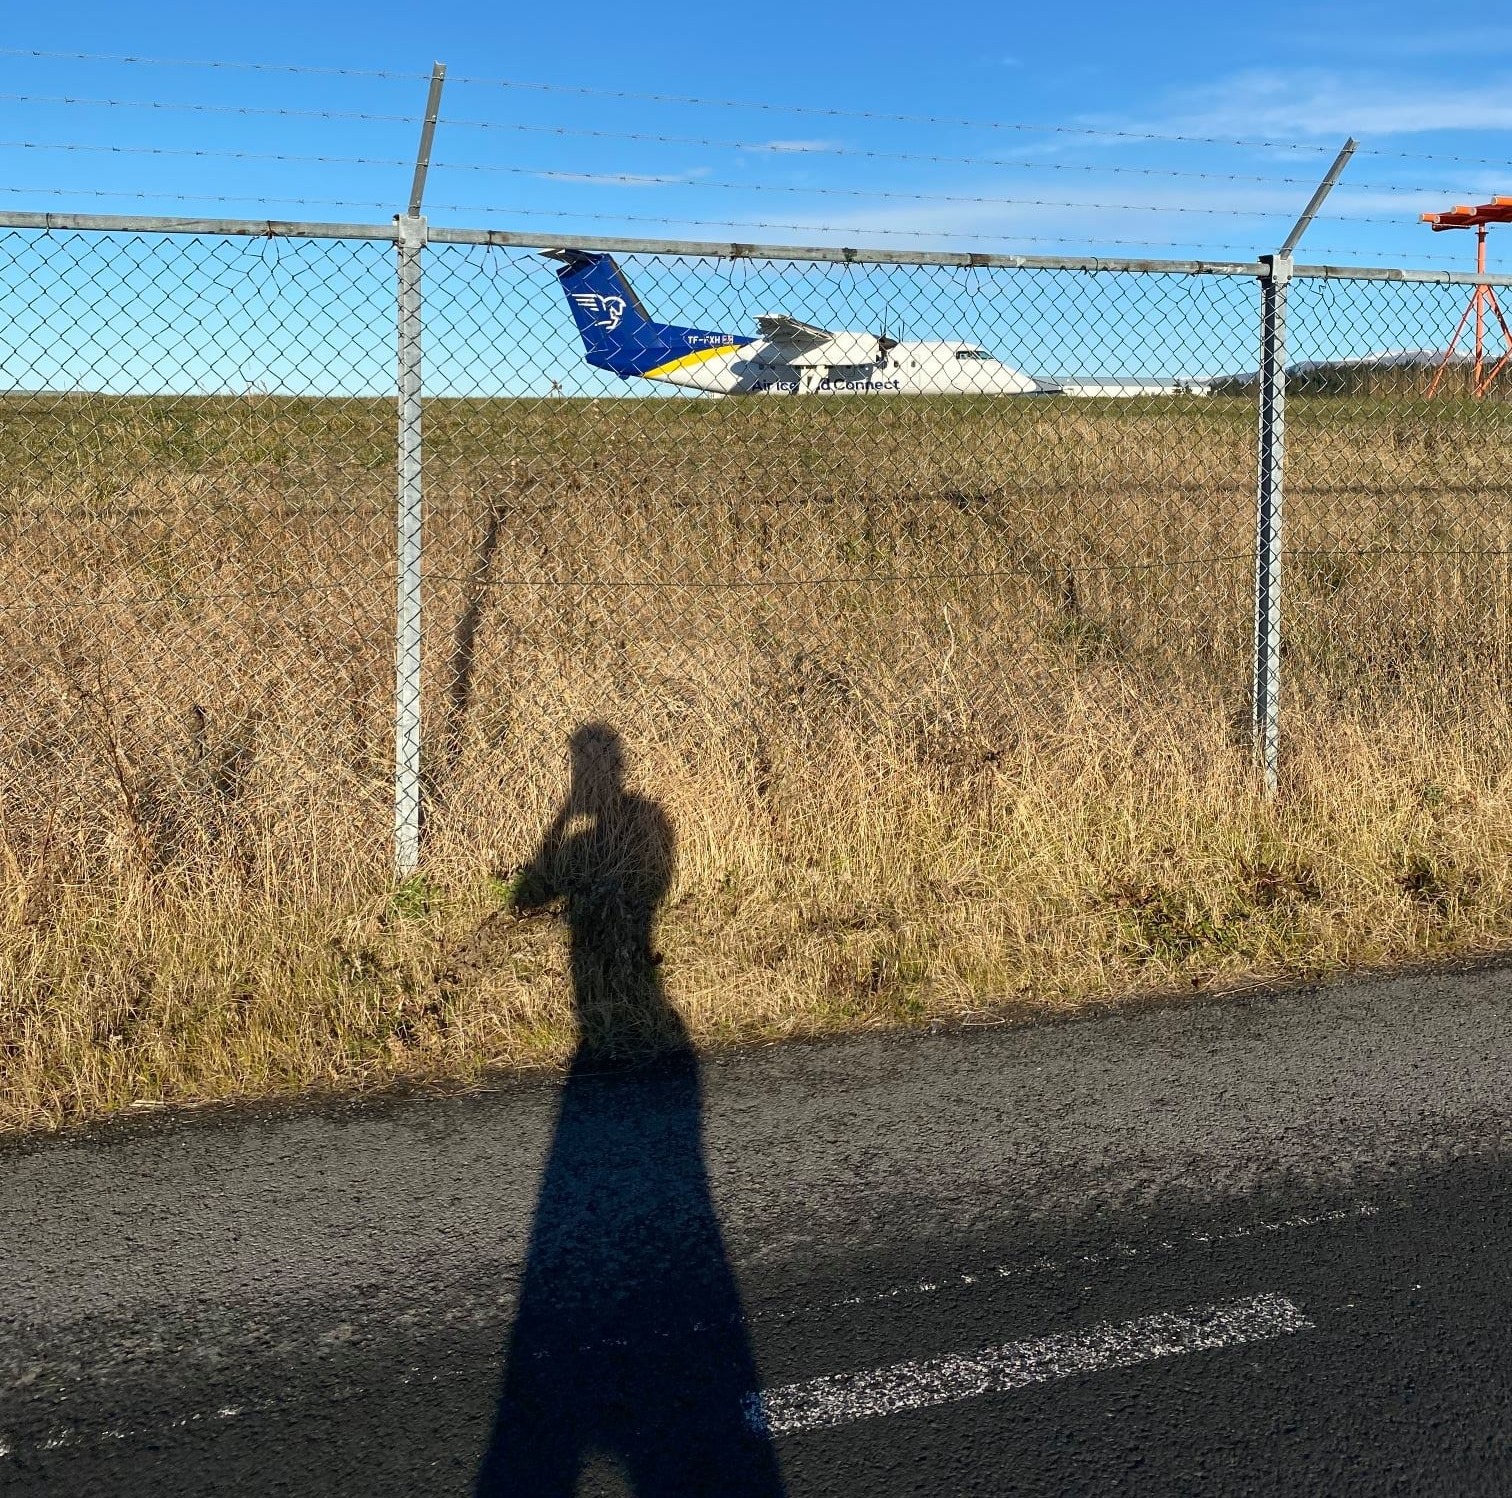 Joggingrunde um den Inlandsflughafen in Reykjavik. Wo der Flug wohl hingeht?…